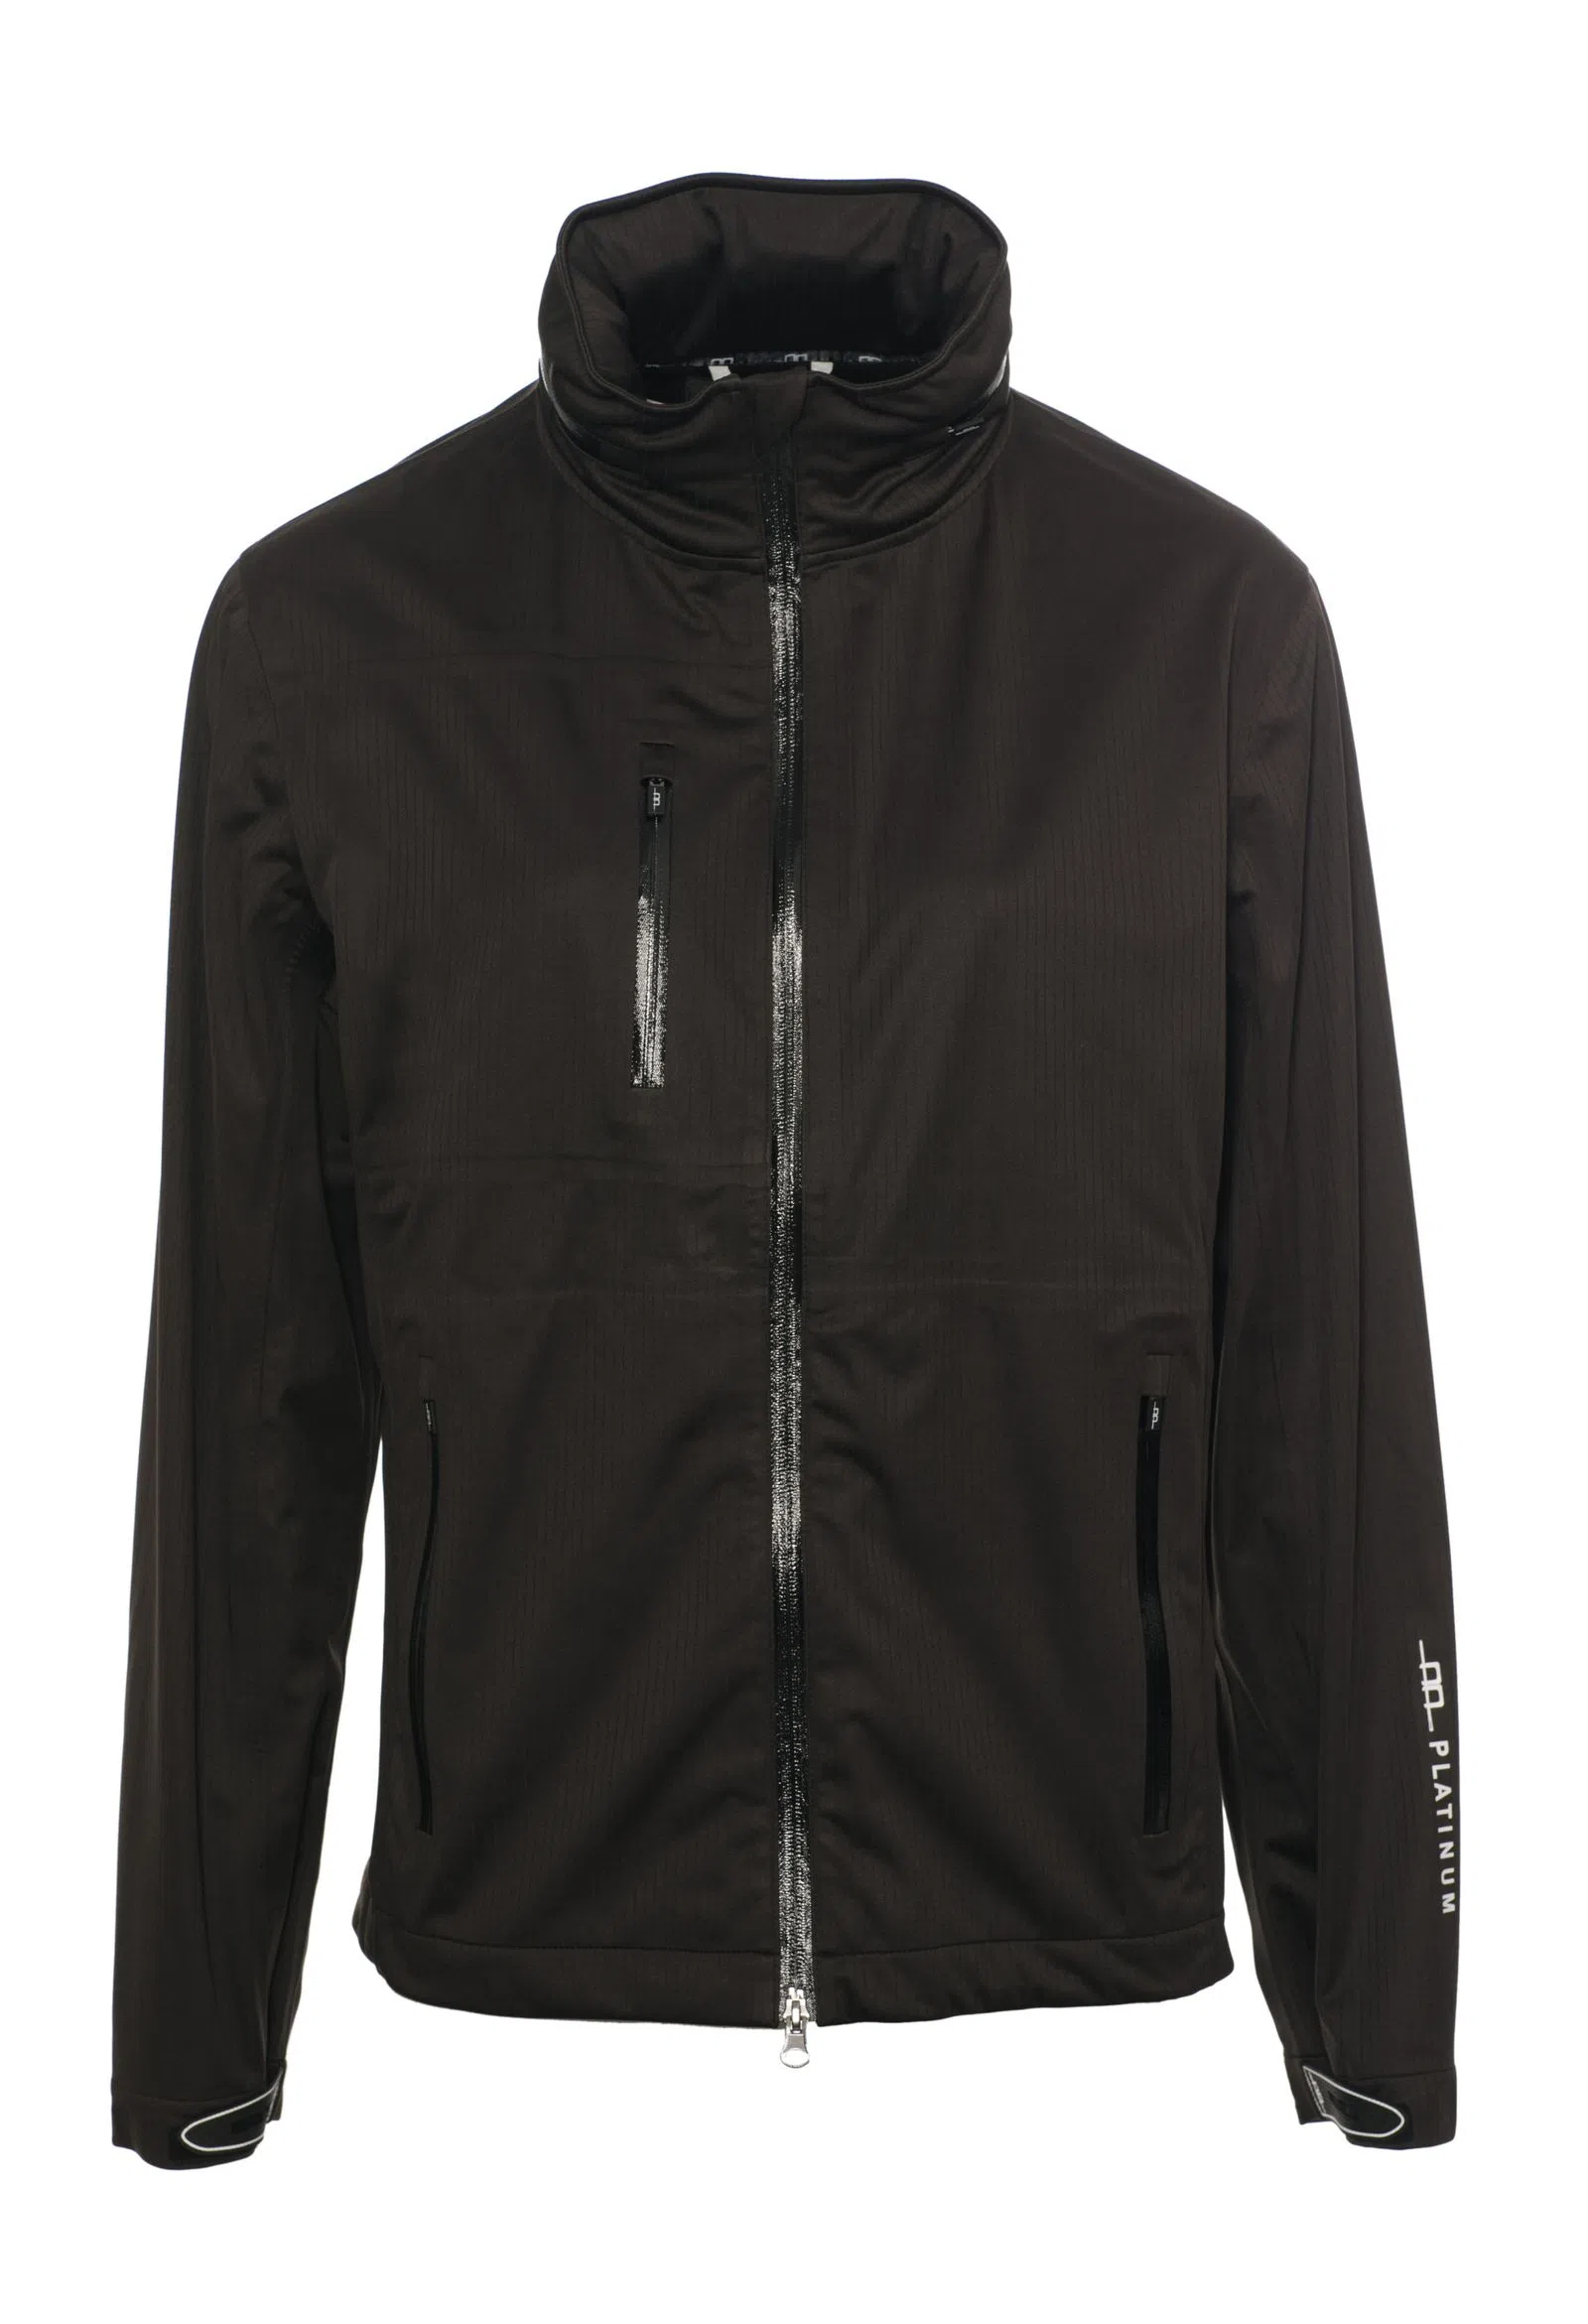 Veste de pluie homme, Milis All-Year-Jacket, imperméable, noir